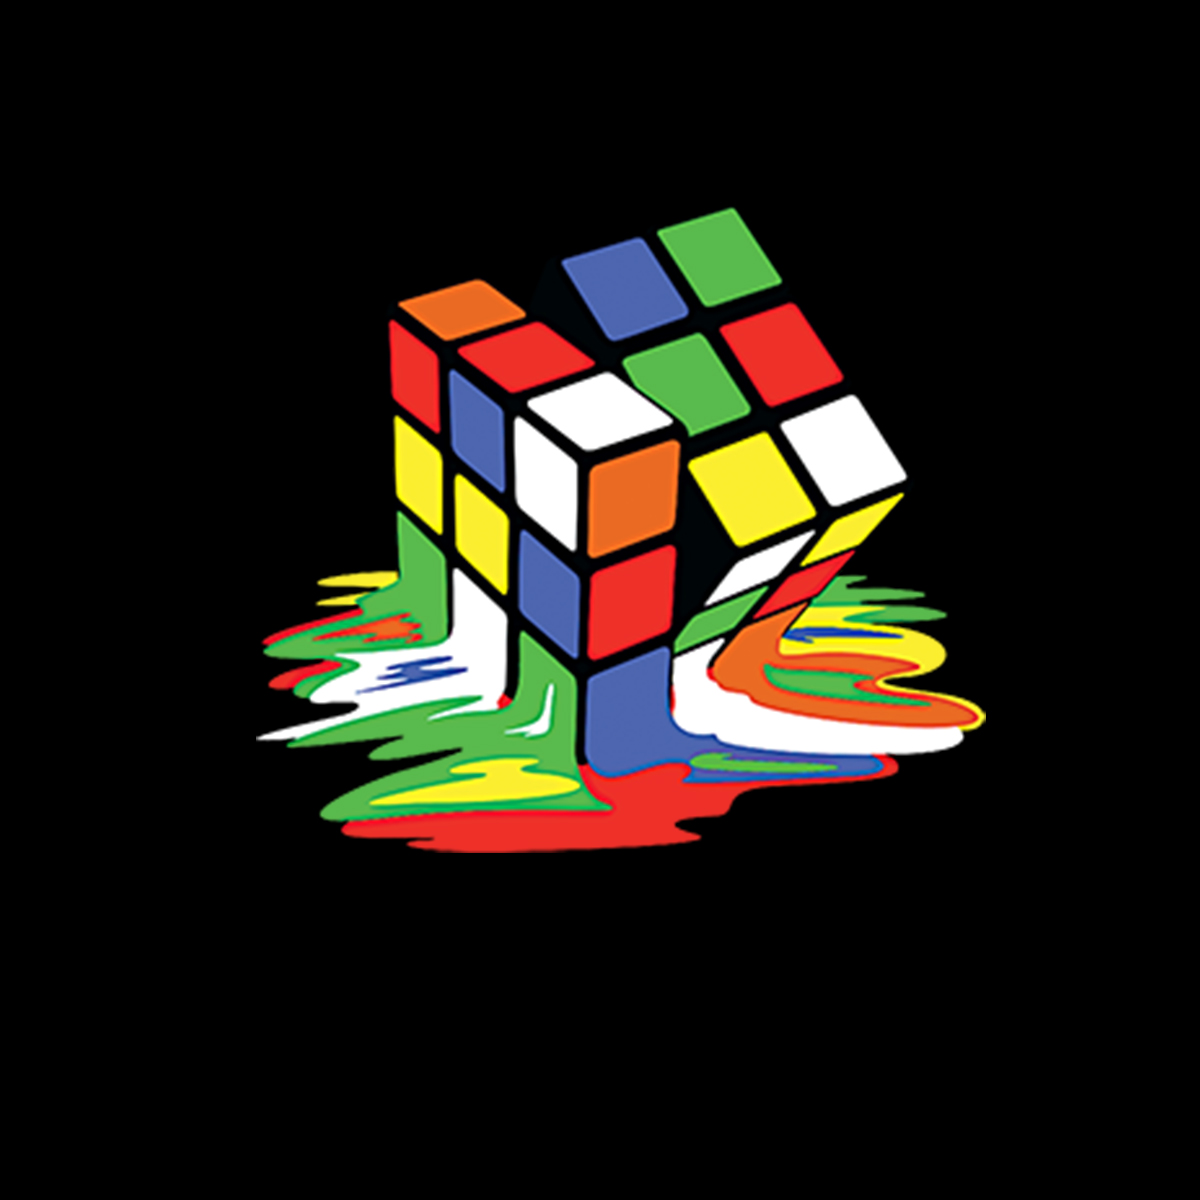 Кубик Рубика на черном фоне